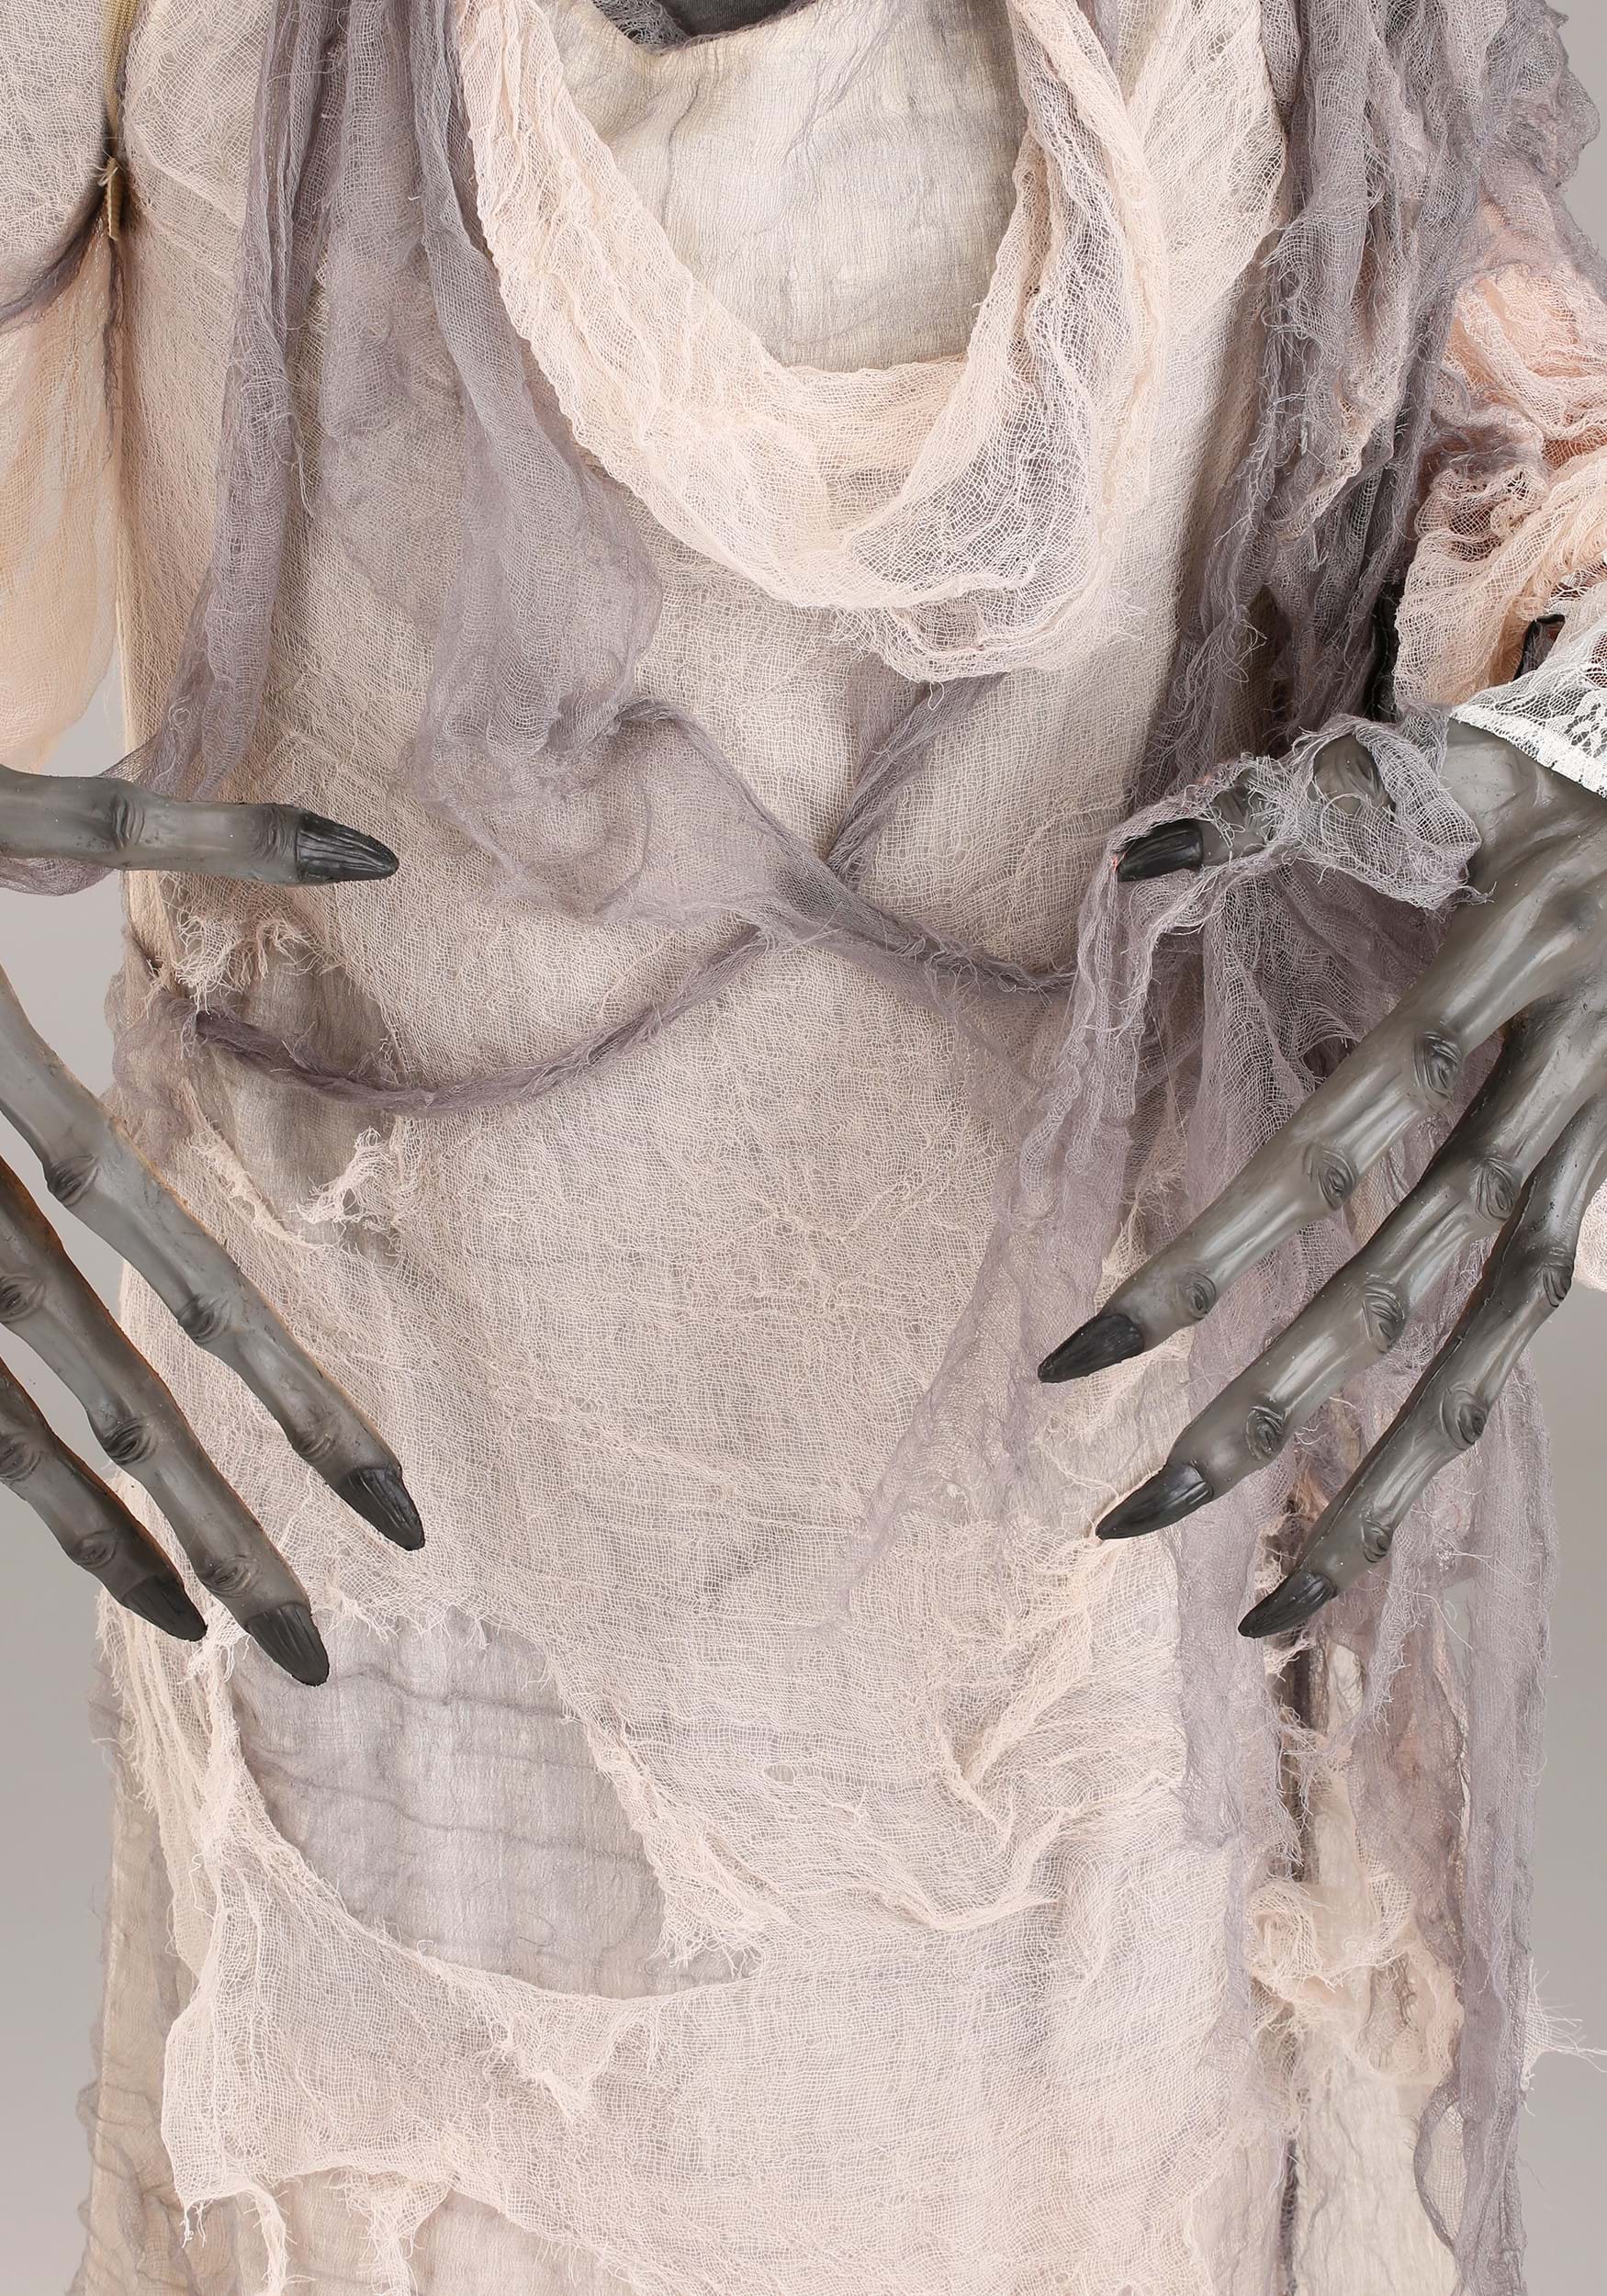 The Dark Crystal Skeksis Adult Fancy Dress Costume